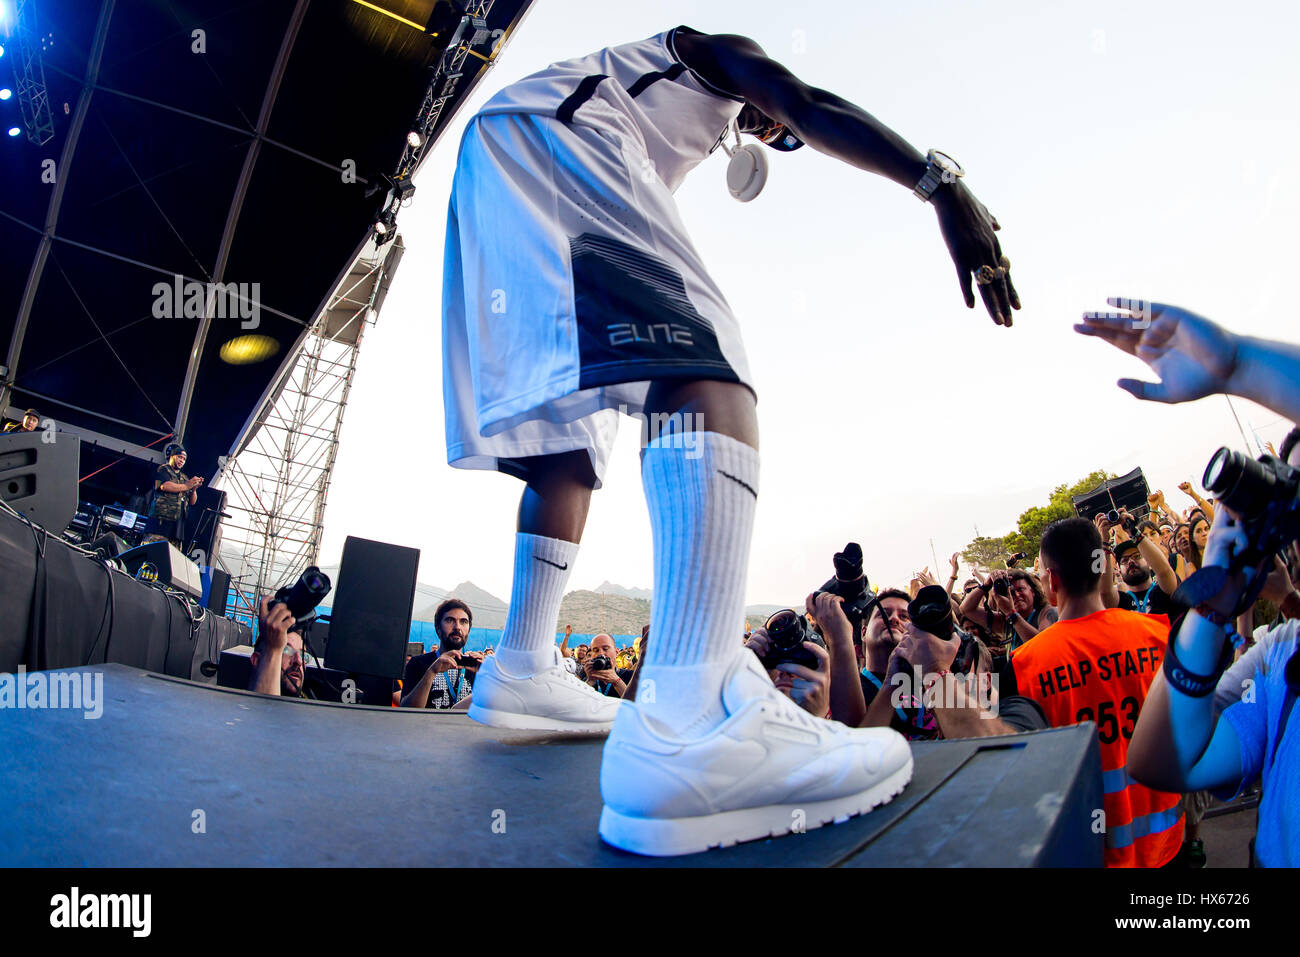 BENICASSIM, Spanien - JUL 19: Public Enemy (Hip-Hop-Gruppe) im Konzert am FIB Festival am 19. Juli 2015 in Benicassim, Spanien. Stockfoto